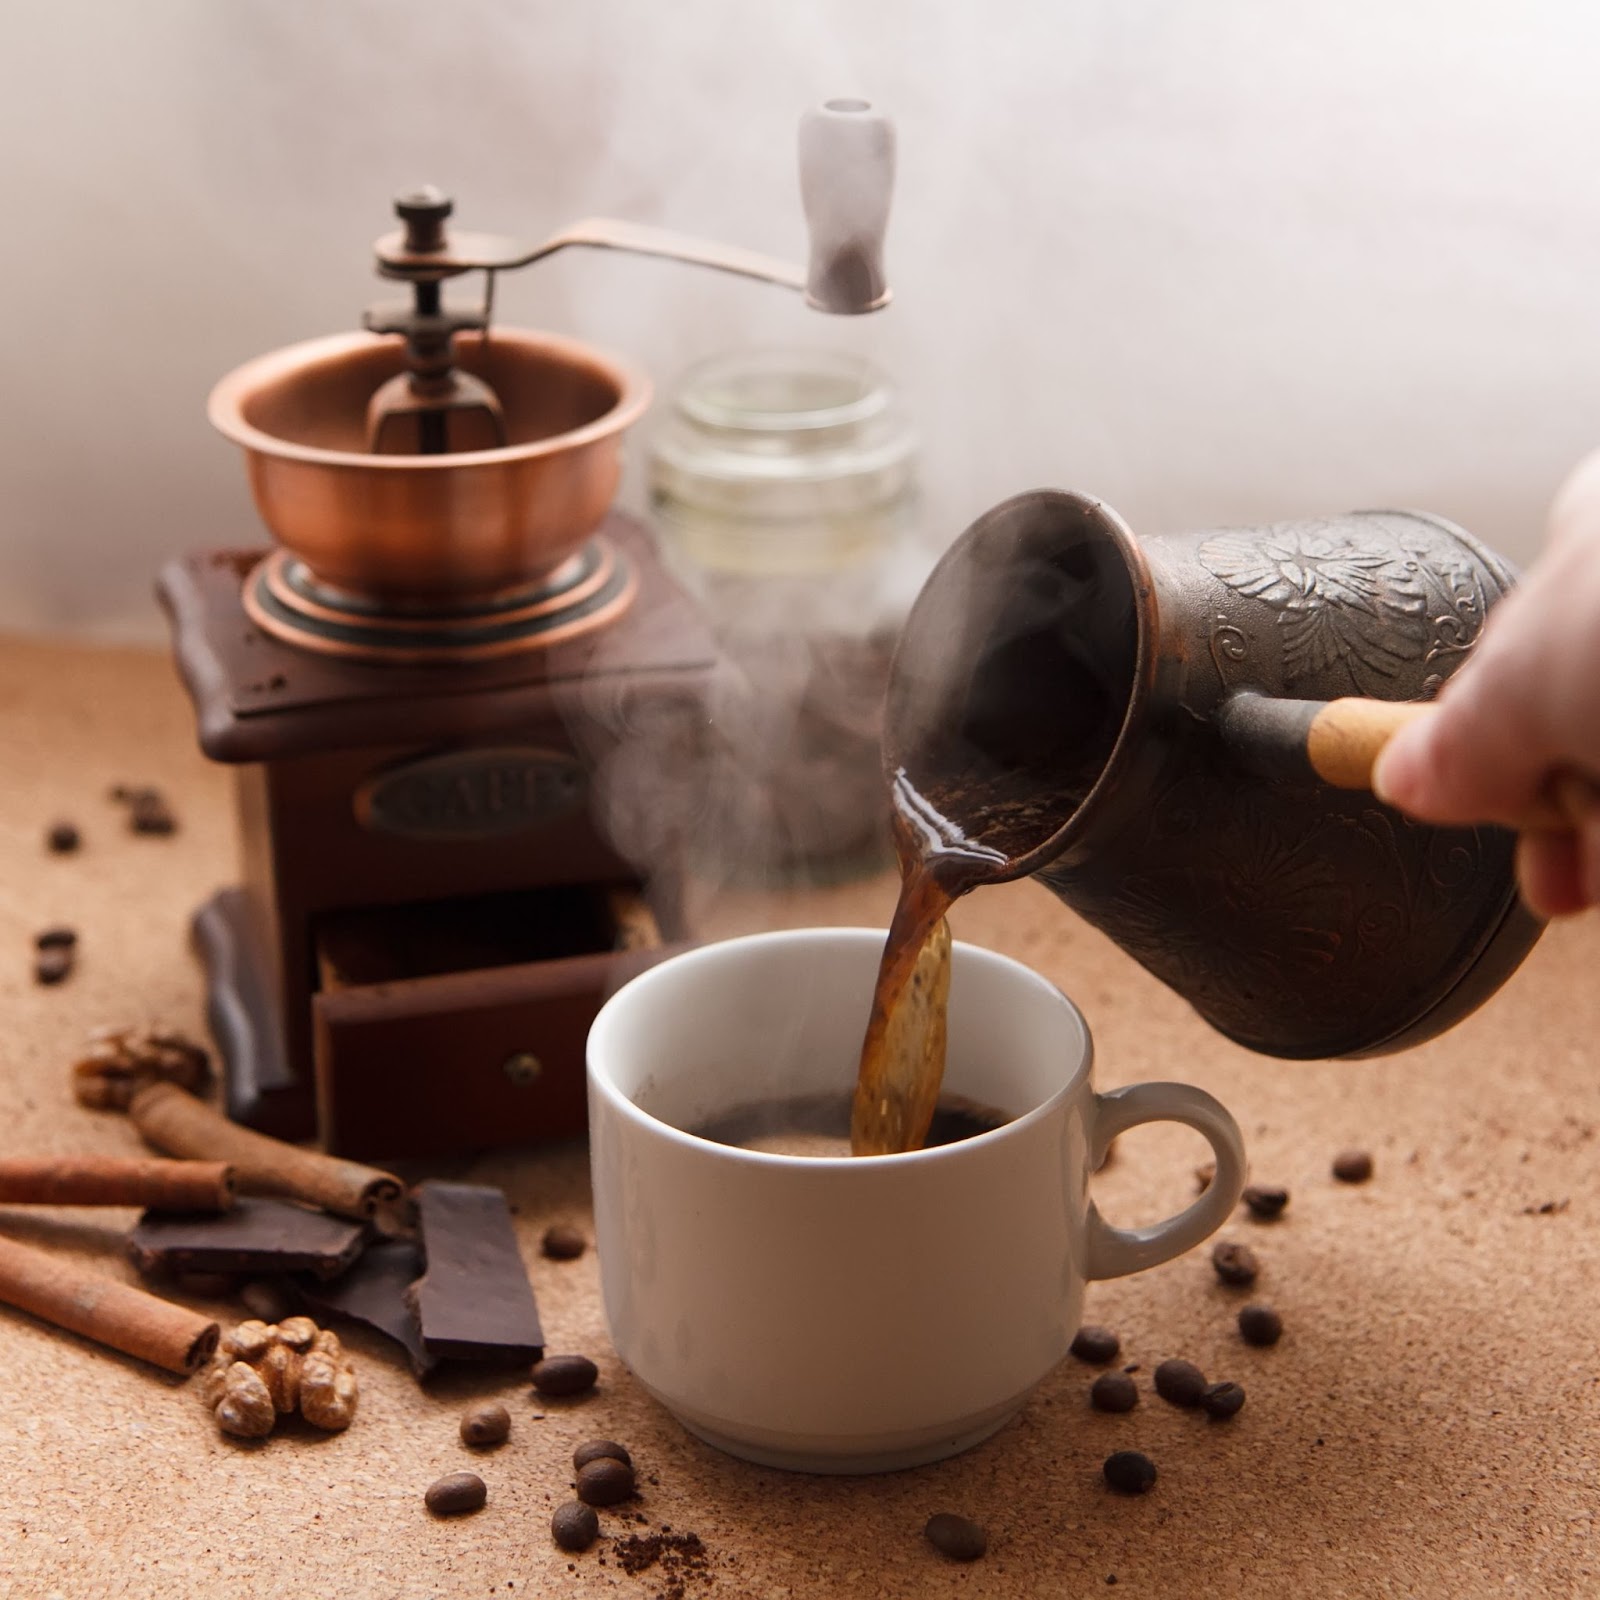 كيفية تحضير القهوة التركية في المنزل: الأدوات والمعدَّات المطلوبة